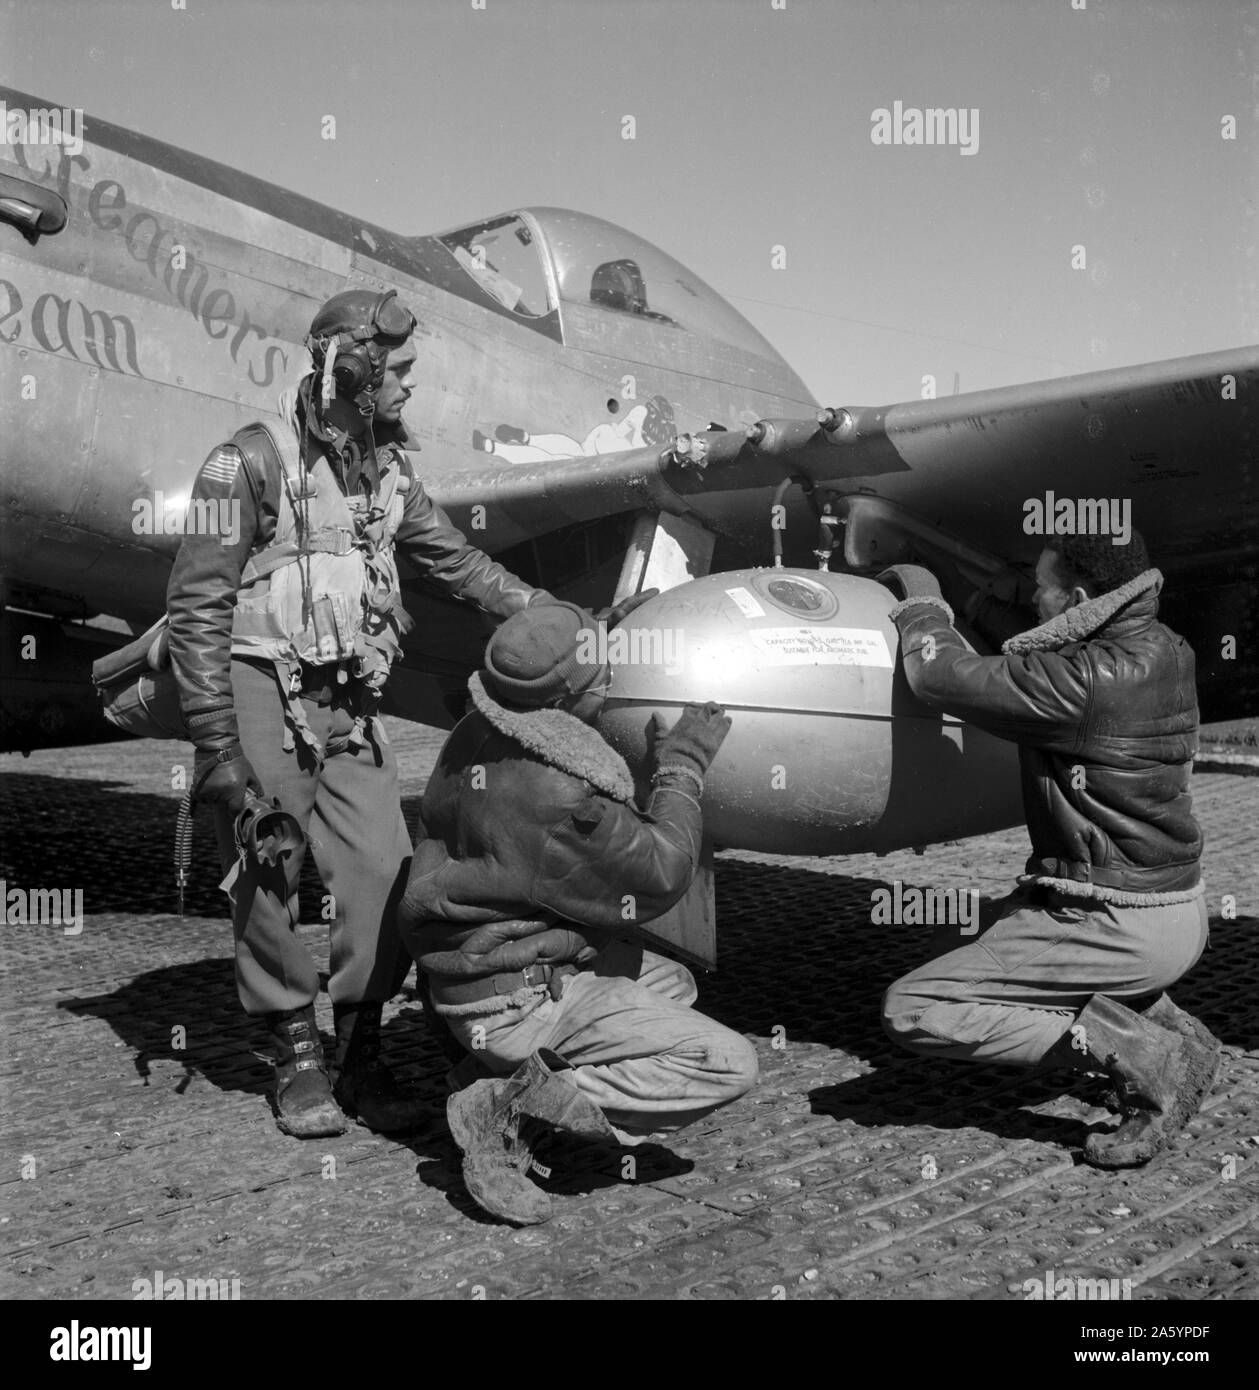 Foto von Edward C. Gleed und zwei nicht identifizierte Tuskegee Airmen, Ramitelli, Italien. Fotografiert von Toni Frissell (1907-1988). Datiert 1945 Stockfoto